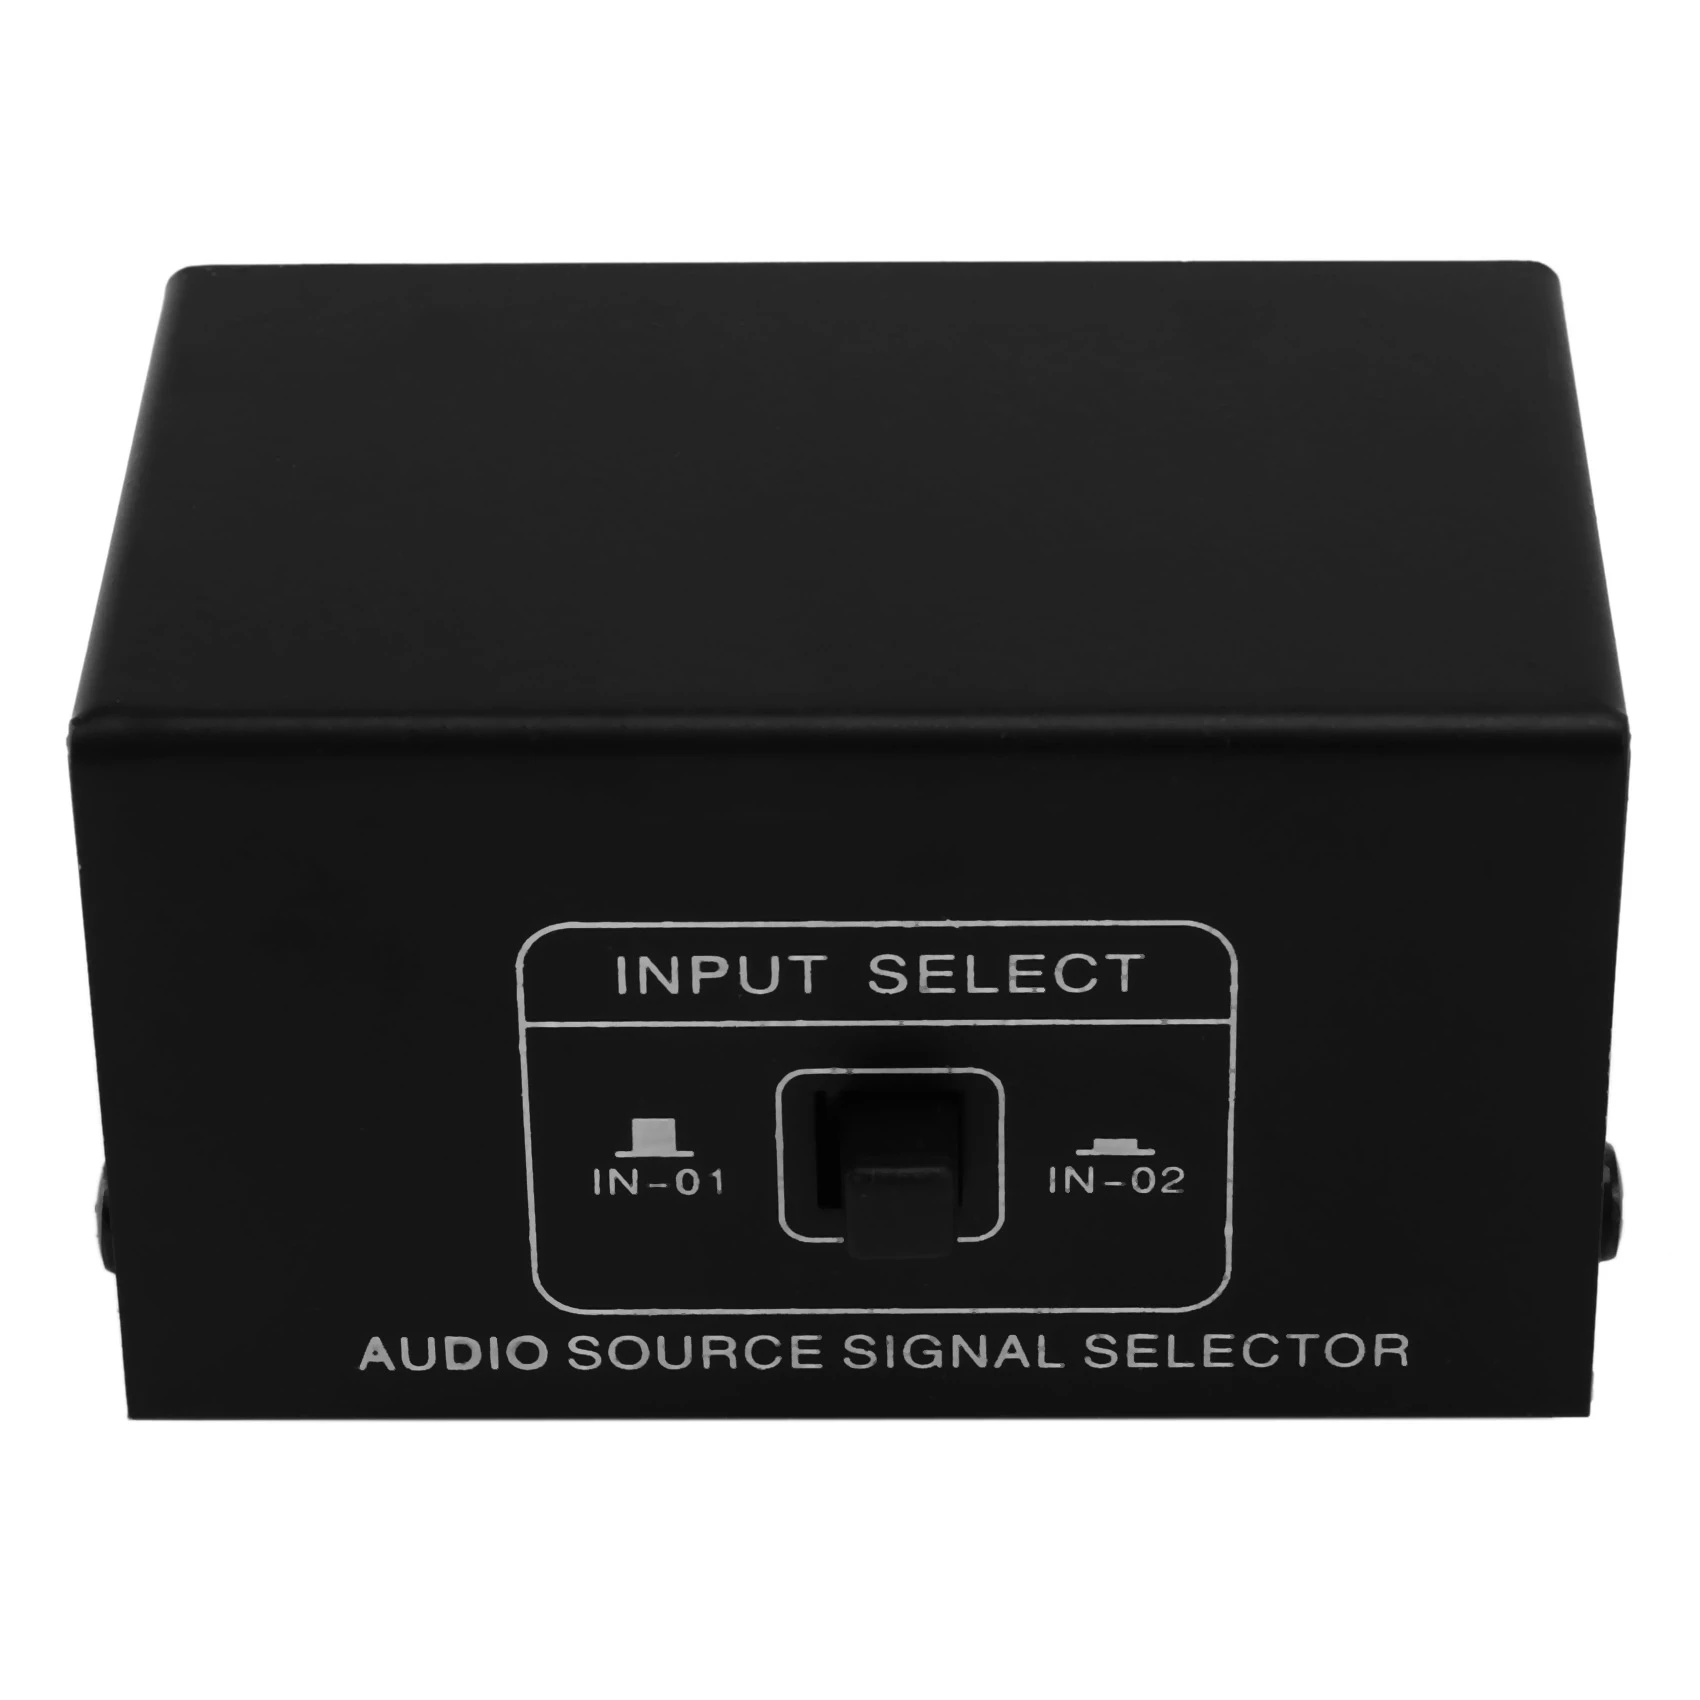 2 în 1 sau 1 în 2 Sursa Audio Semnal Selector, Switcher, Difuzor, Sursa Audio, Comutator, RCA Interfata, Lossess - 3